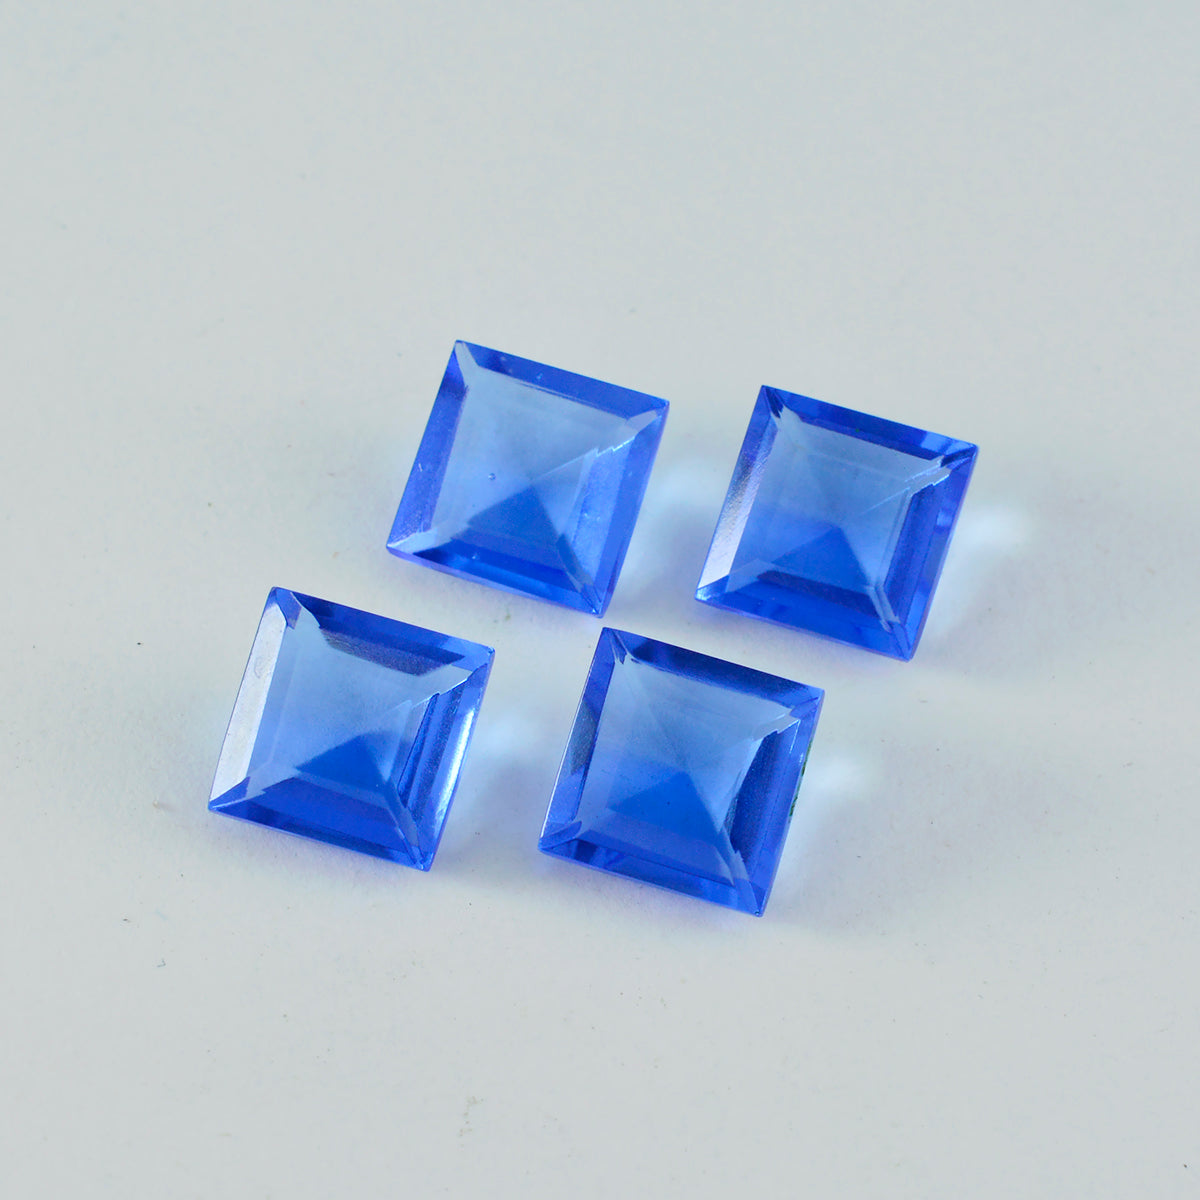 Riyogems 1 Stück blauer Saphir, CZ, facettiert, 11 x 11 mm, quadratische Form, gut aussehende, hochwertige lose Edelsteine